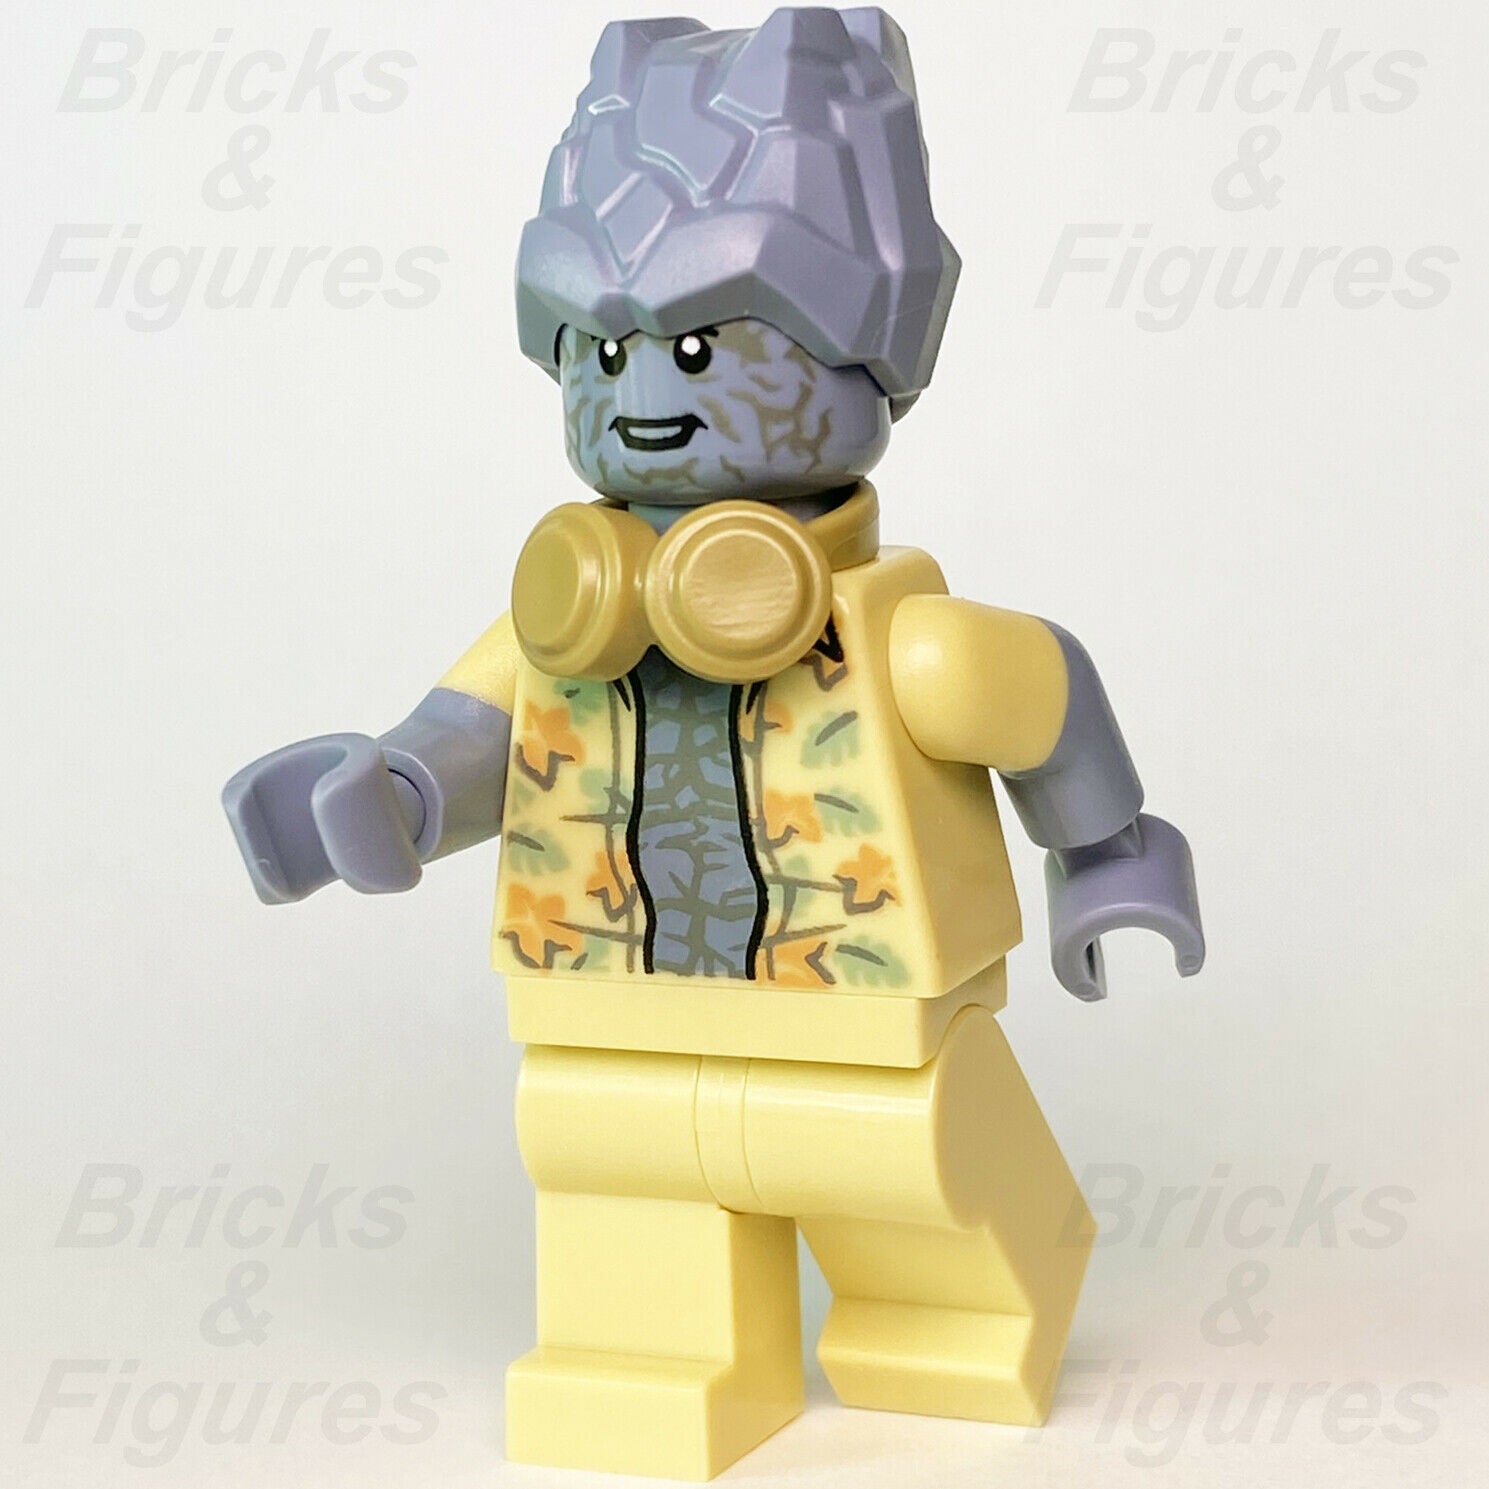 New Marvel Super Heroes LEGO Korg Avengers Endgame Minifigure 76200 sh752 - Bricks & Figures